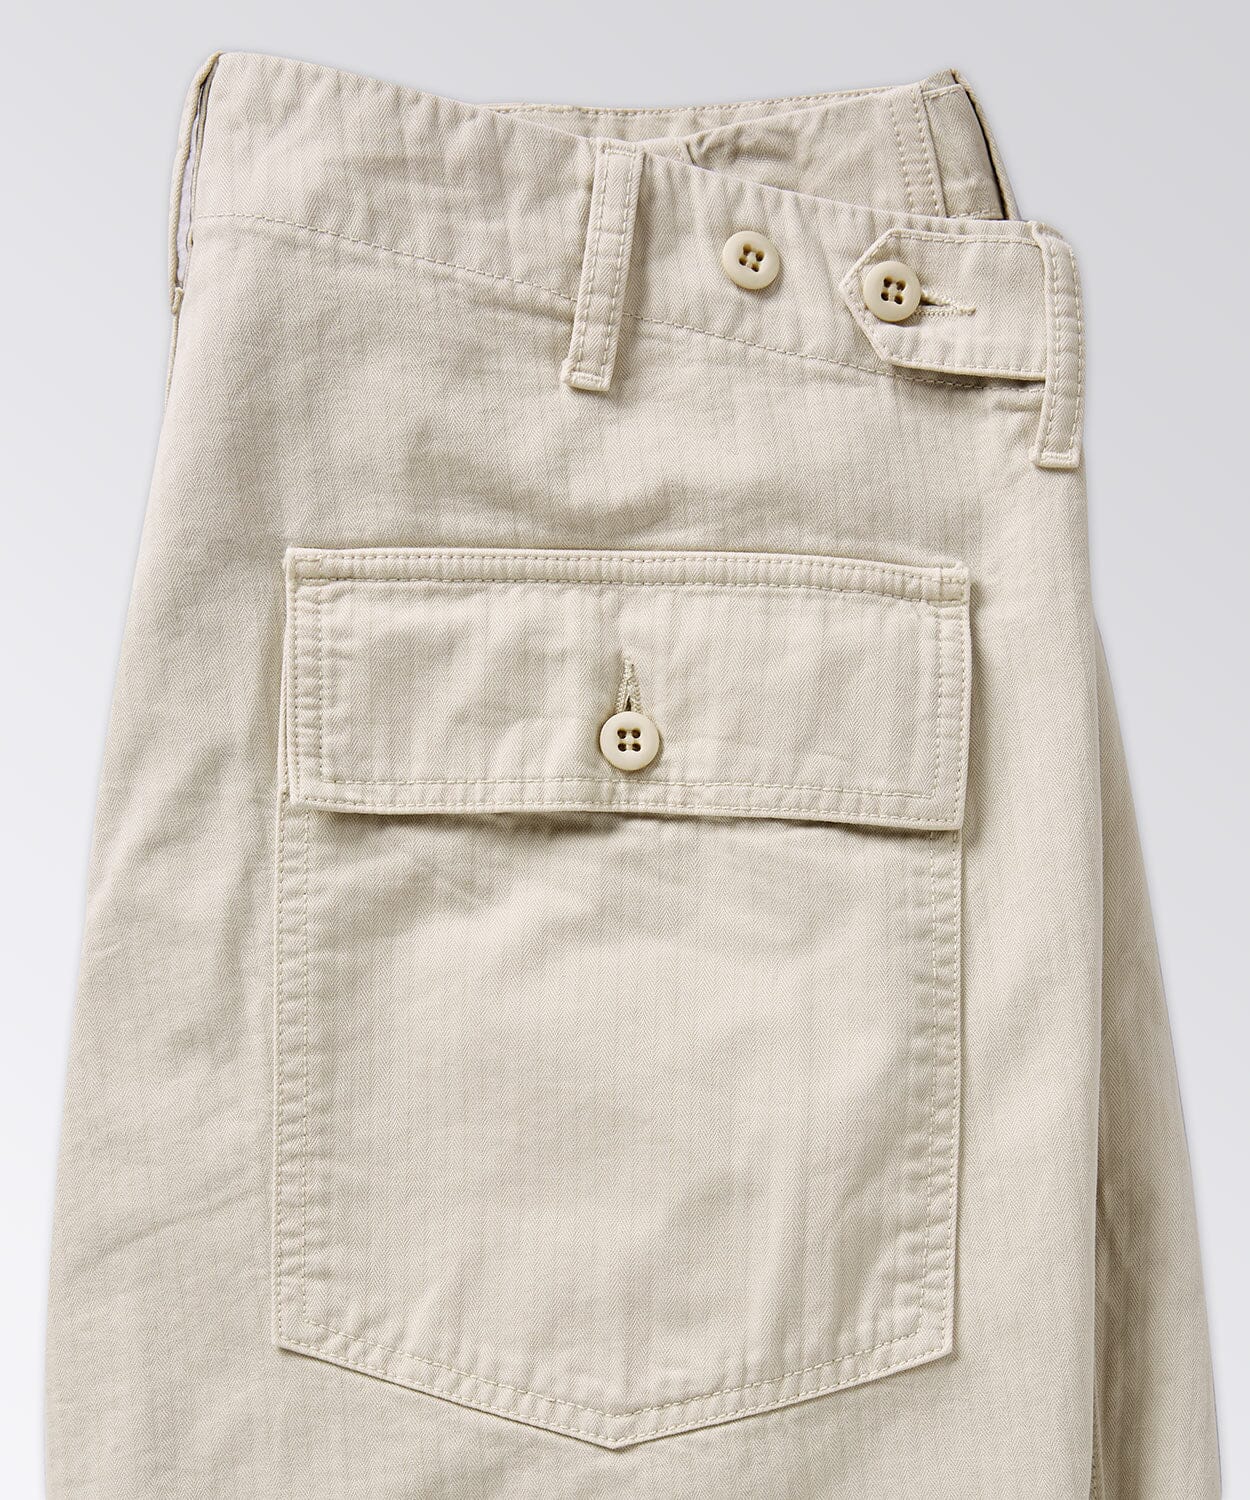 pocket of mens shorts